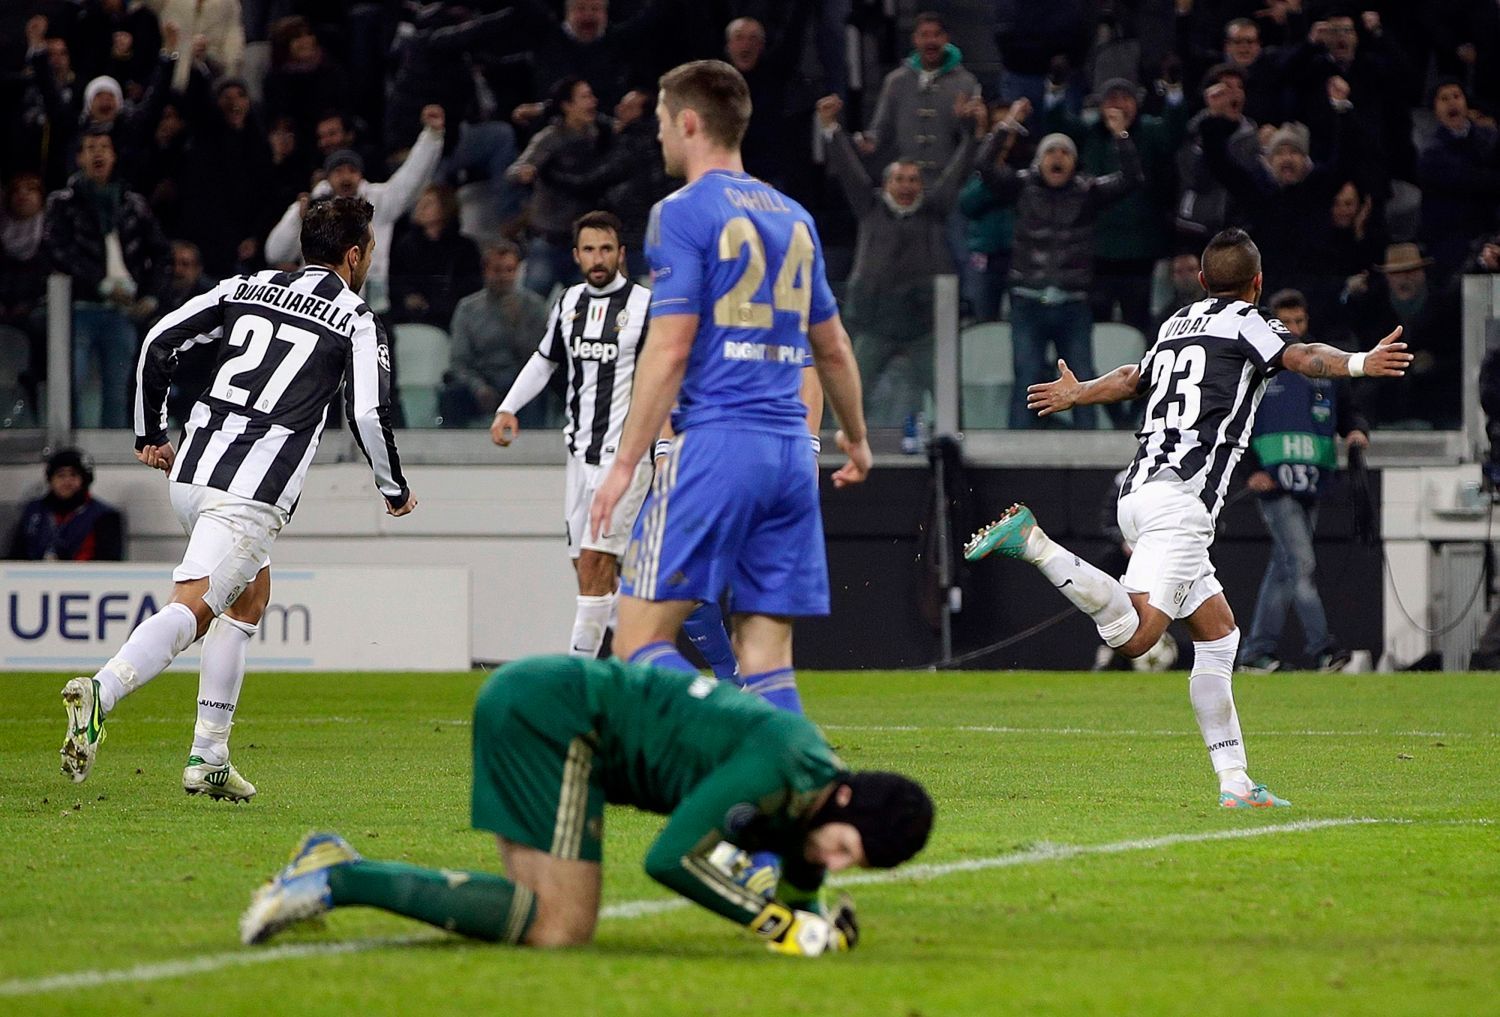 Fotbalista Juventusu Arturo Vidal slaví gól v utkání Ligy mistrů 2012/13 proti Chelsea.